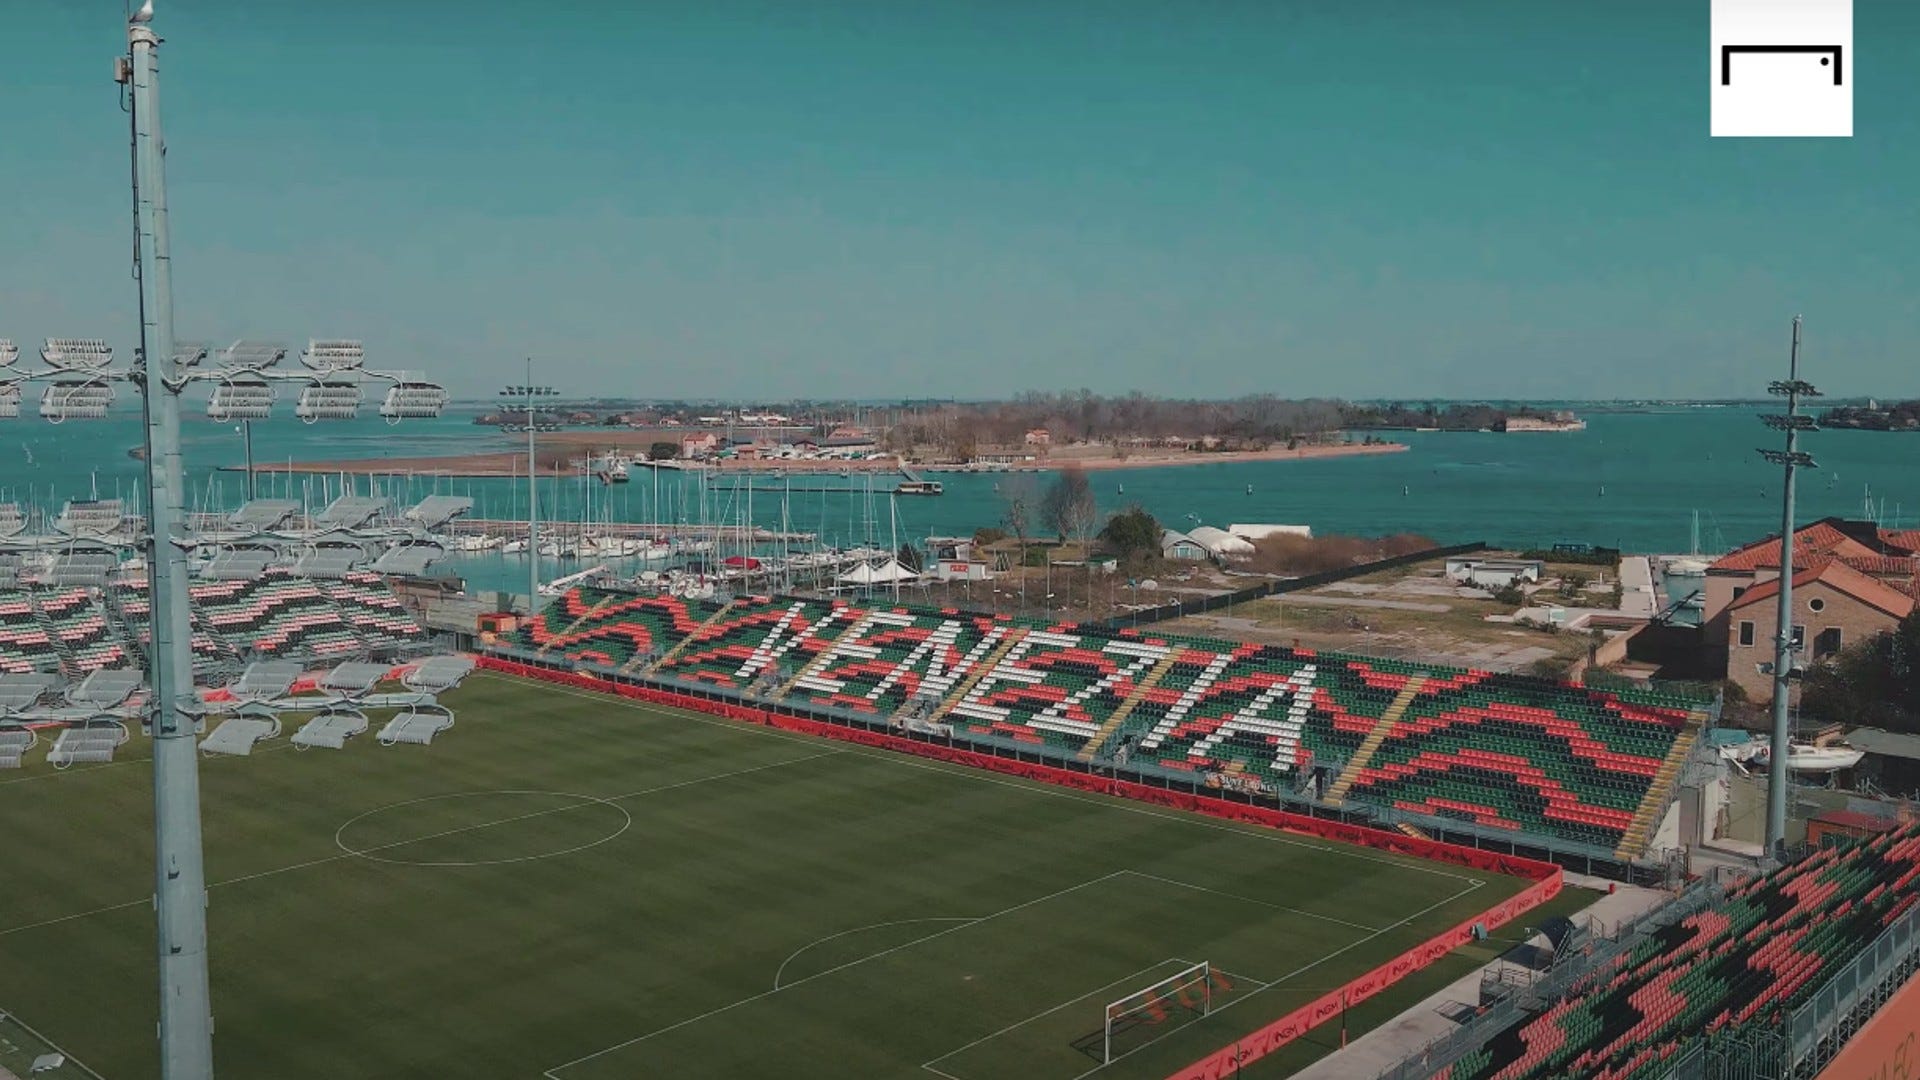 Venezia stadium: Stadio Penzo capacity, location, facts & video tour - Goal.com